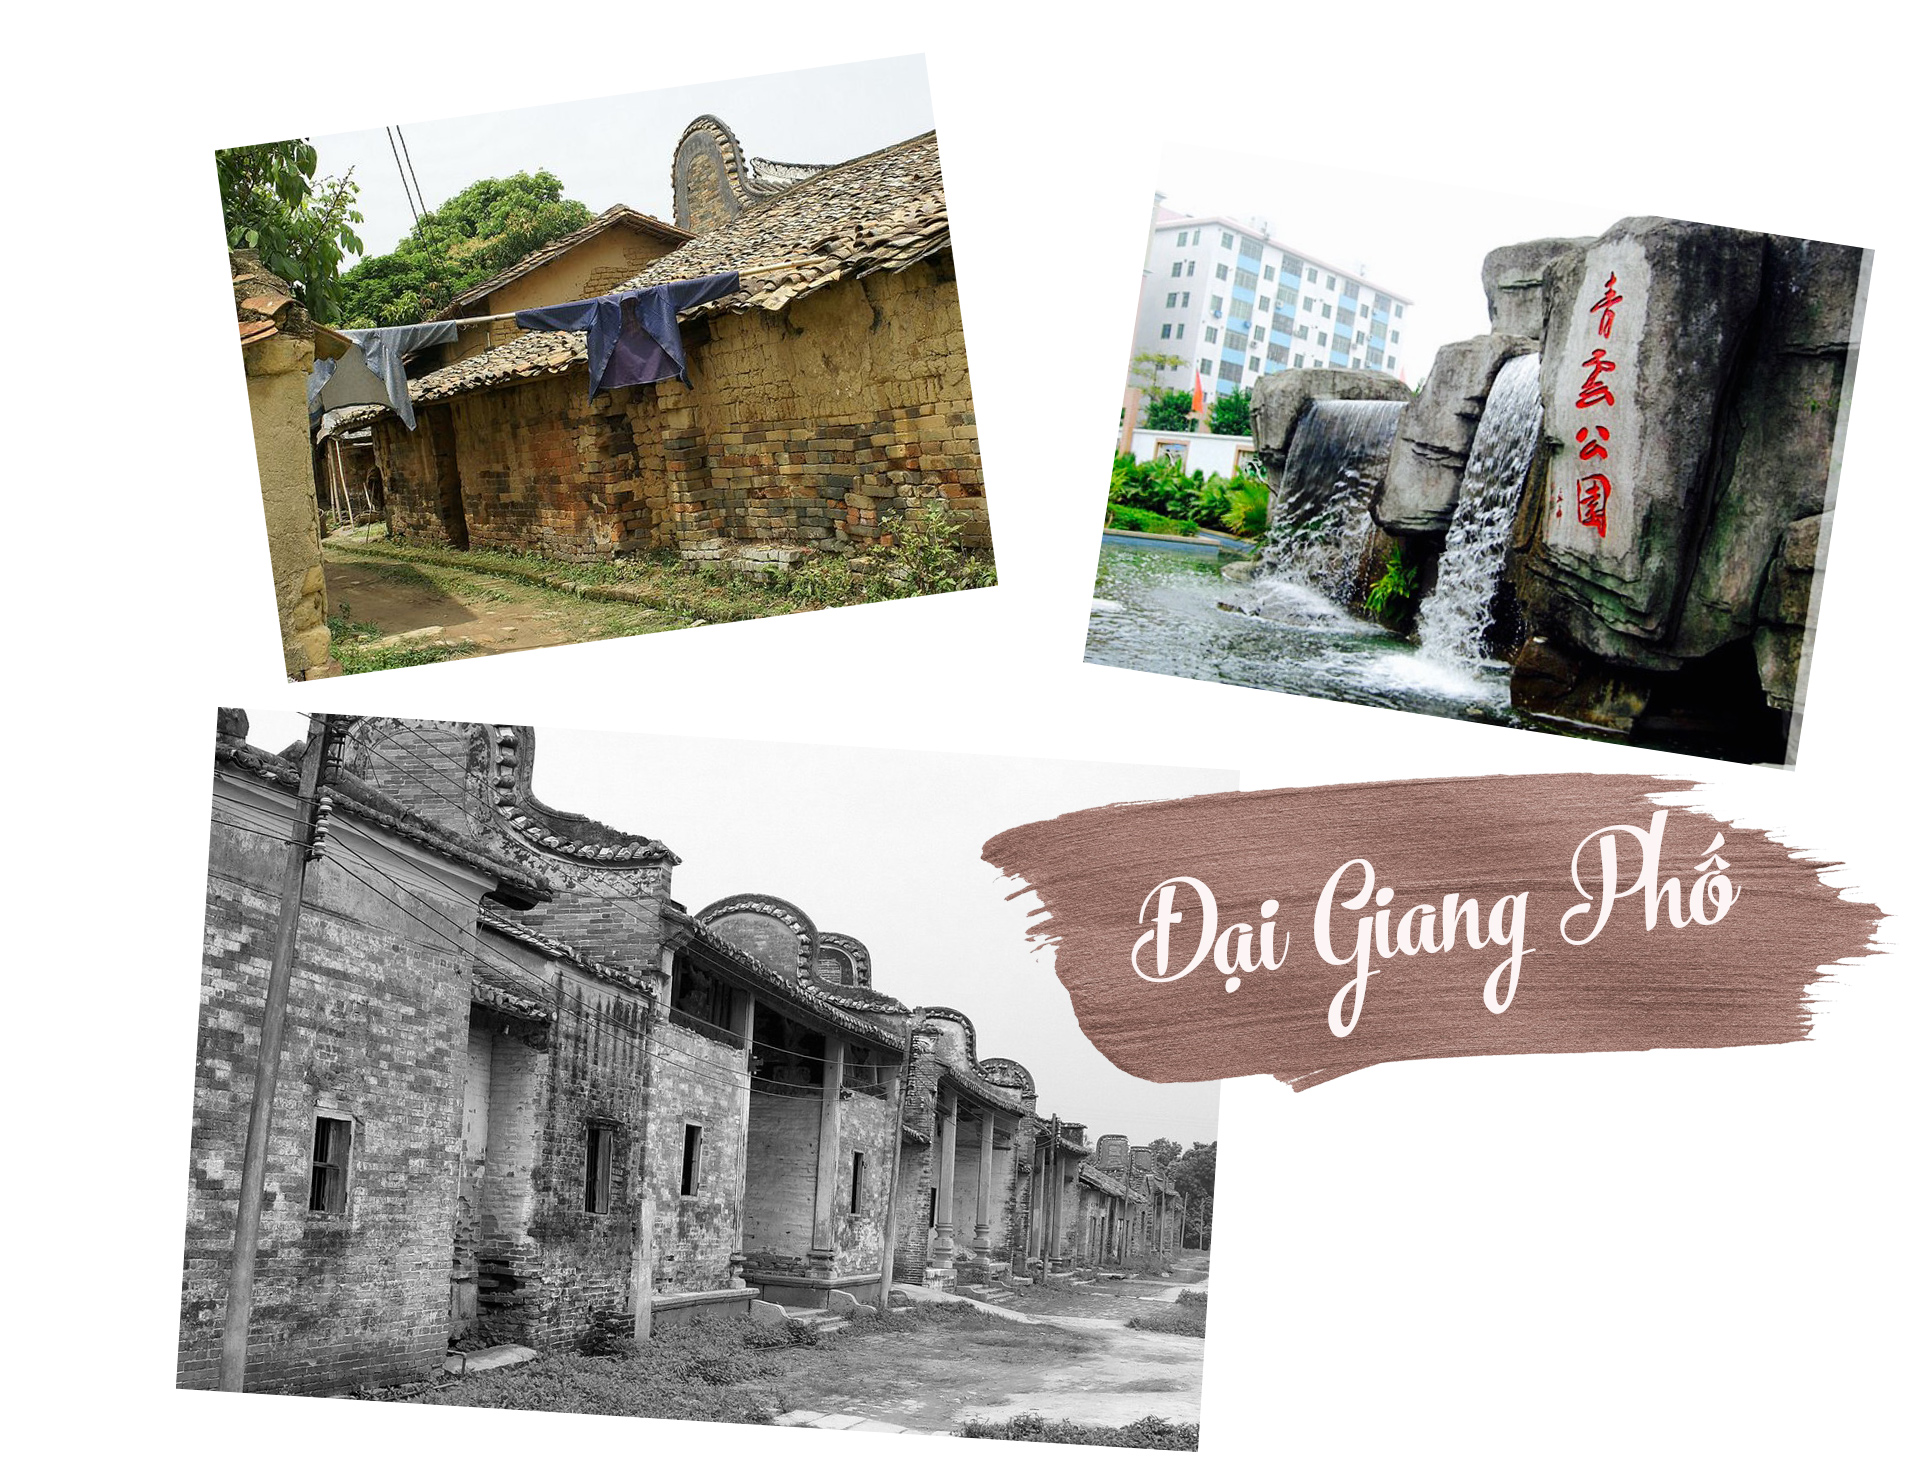 Ám ảnh những ngôi làng cổ xinh đẹp bị bỏ hoang ở Trung Quốc - 4